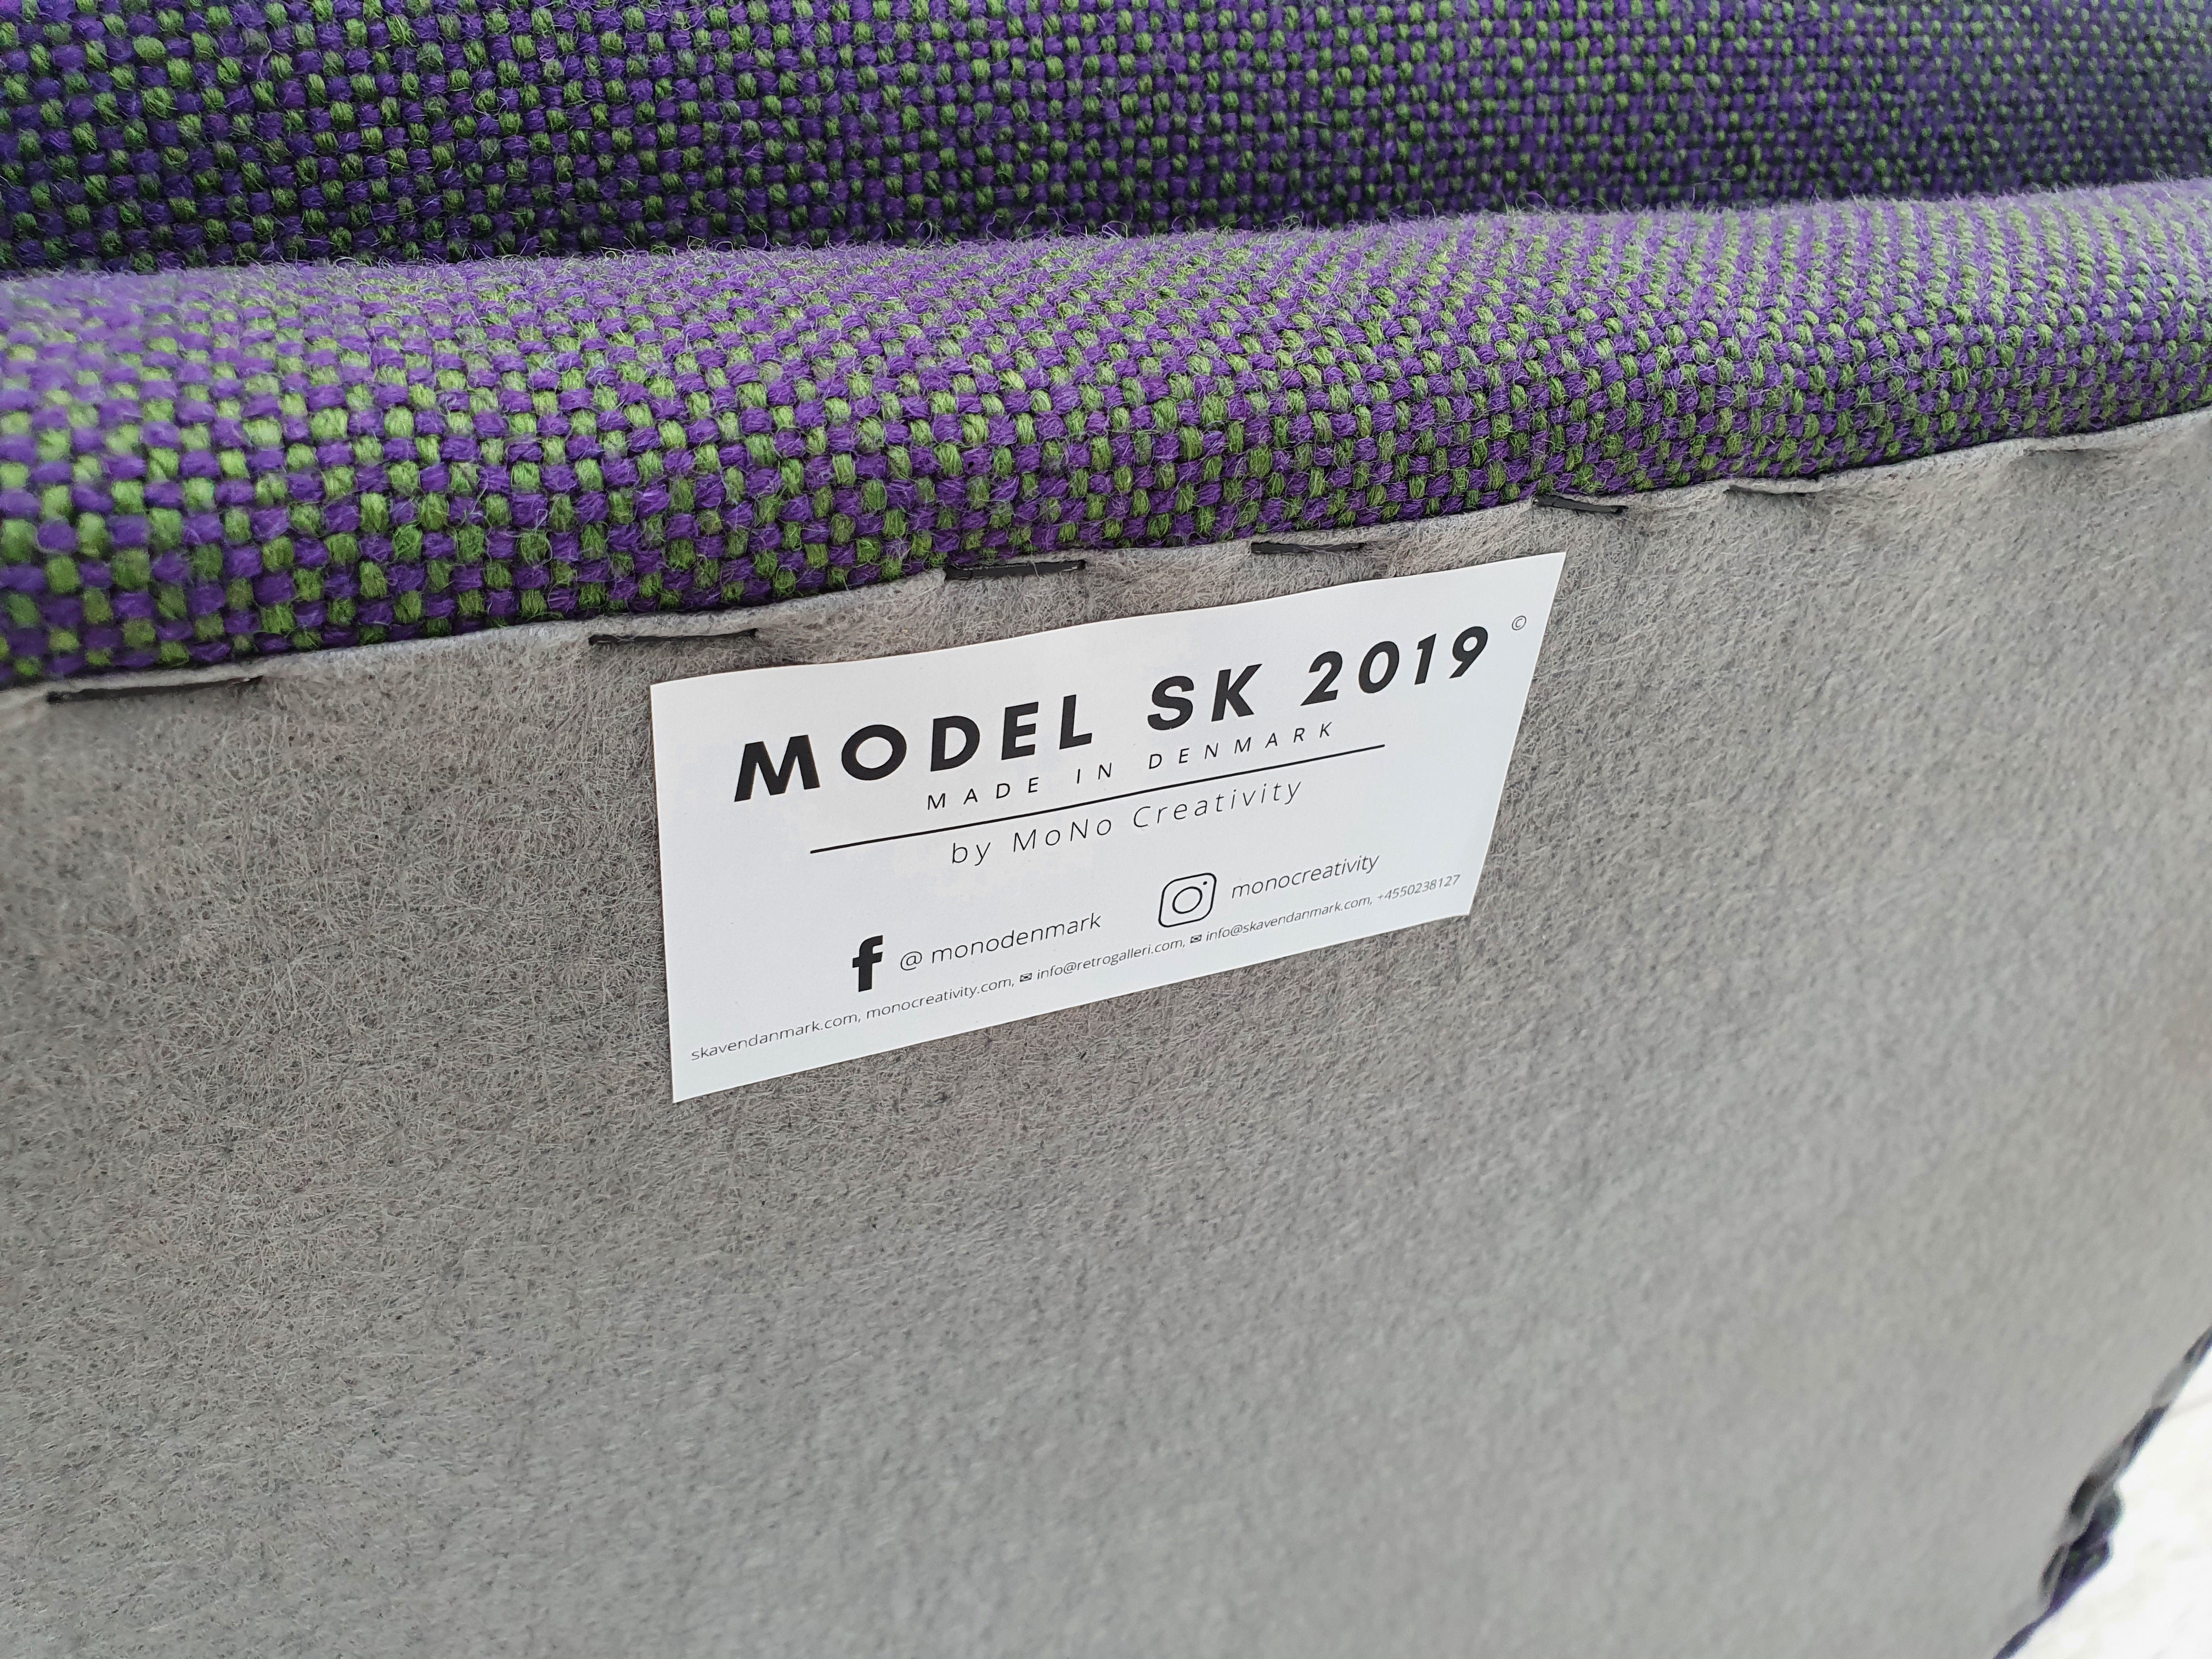 Sofa Model SK 2019, filtagtig møbeluld, knapper - udstilling model